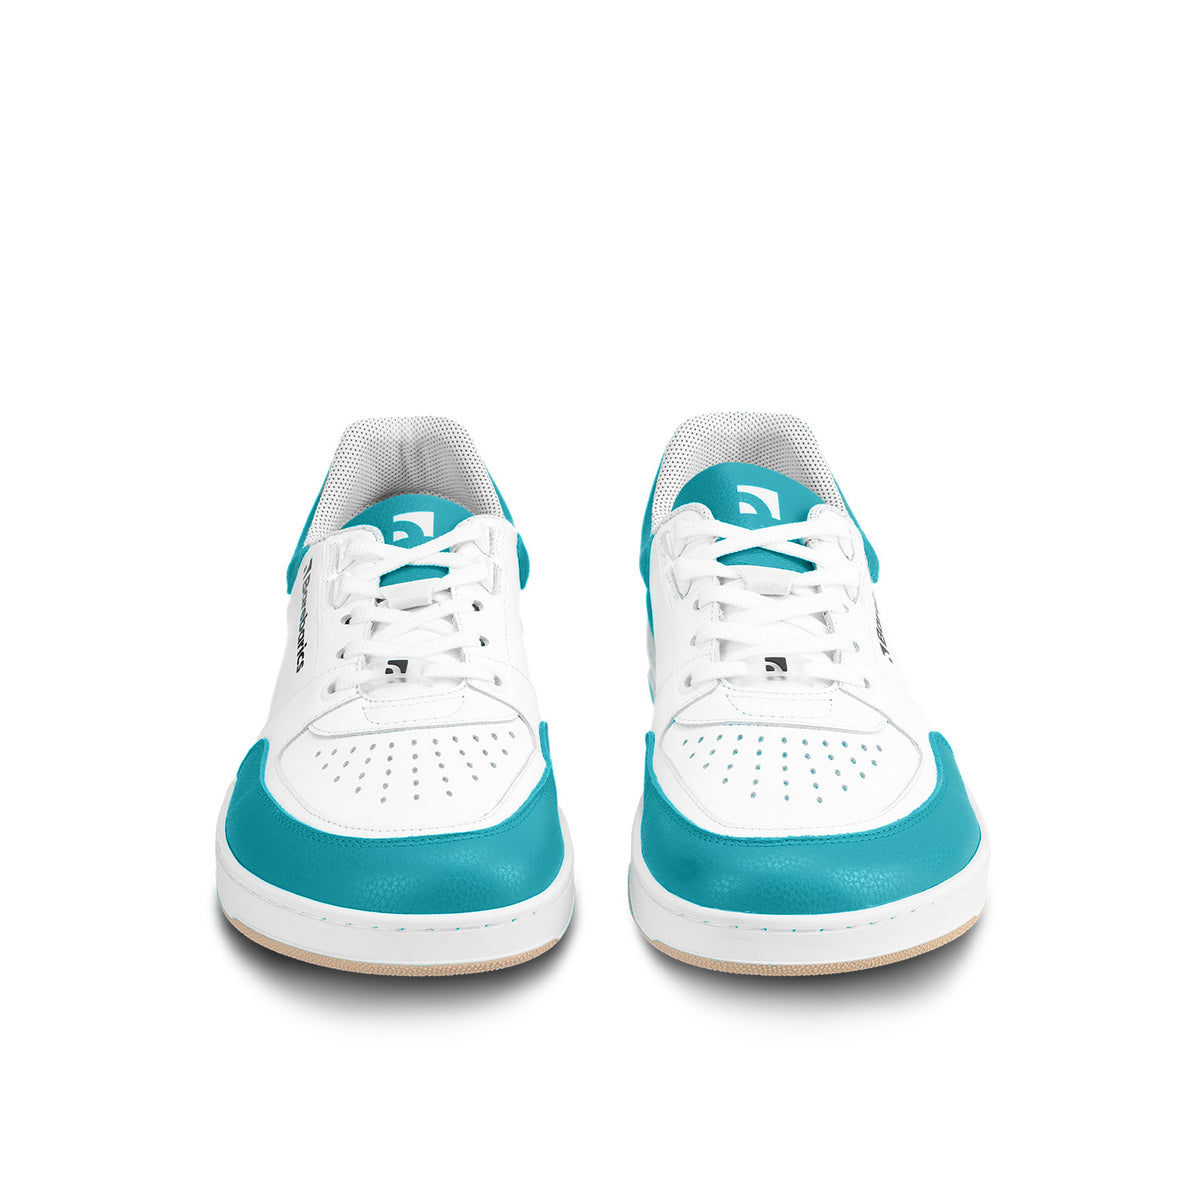 Barefoot Sneakers Barebarics Wave - White & Dark Turquoise 5  - OzBarefoot